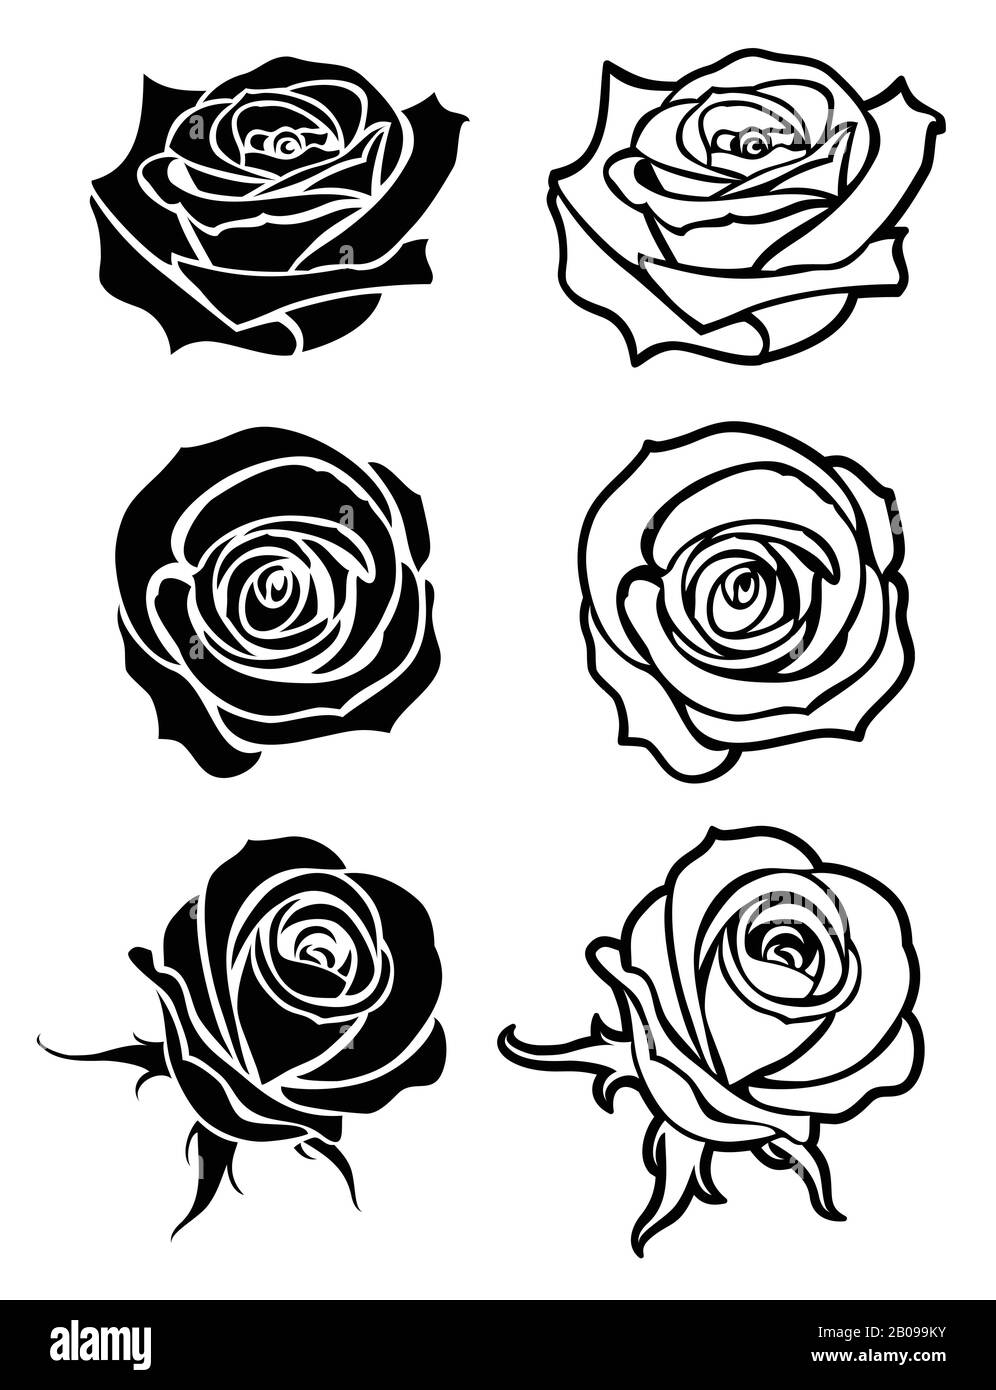 Nahaufnahme von Rosen-Vektor-Tätowierung, Logos, floralen Silhouetten. Set aus Blumenrose monochrom, Rosen mit Blumendarstellung Stock Vektor